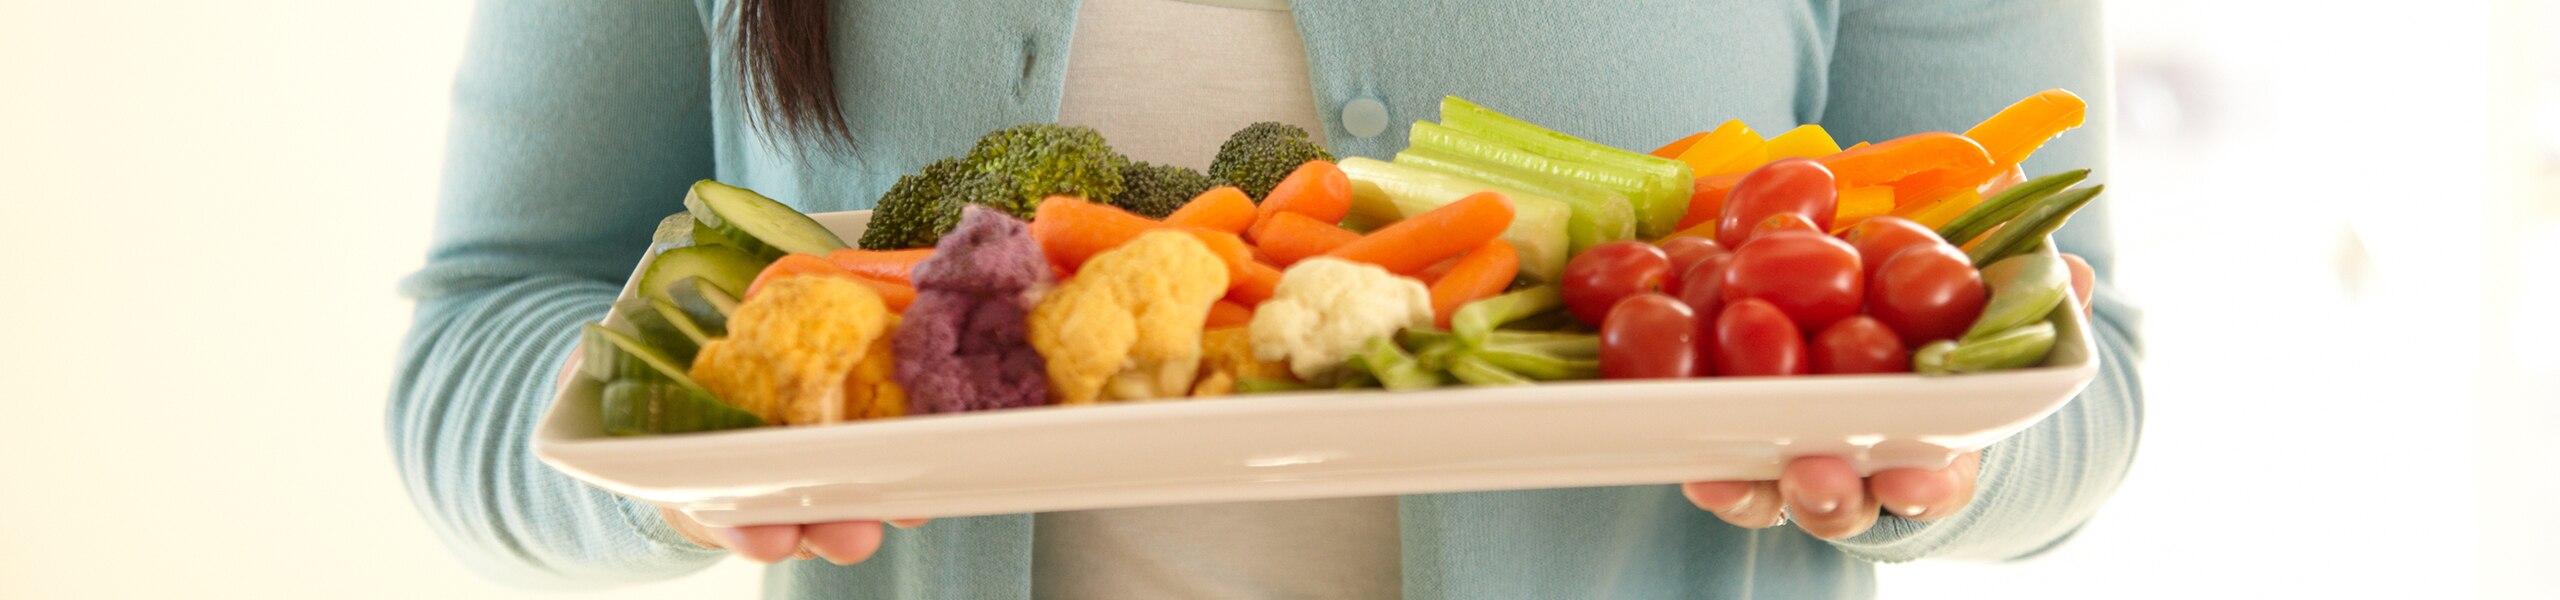 Una persona sosteniendo un plato con verduras crudas variadas